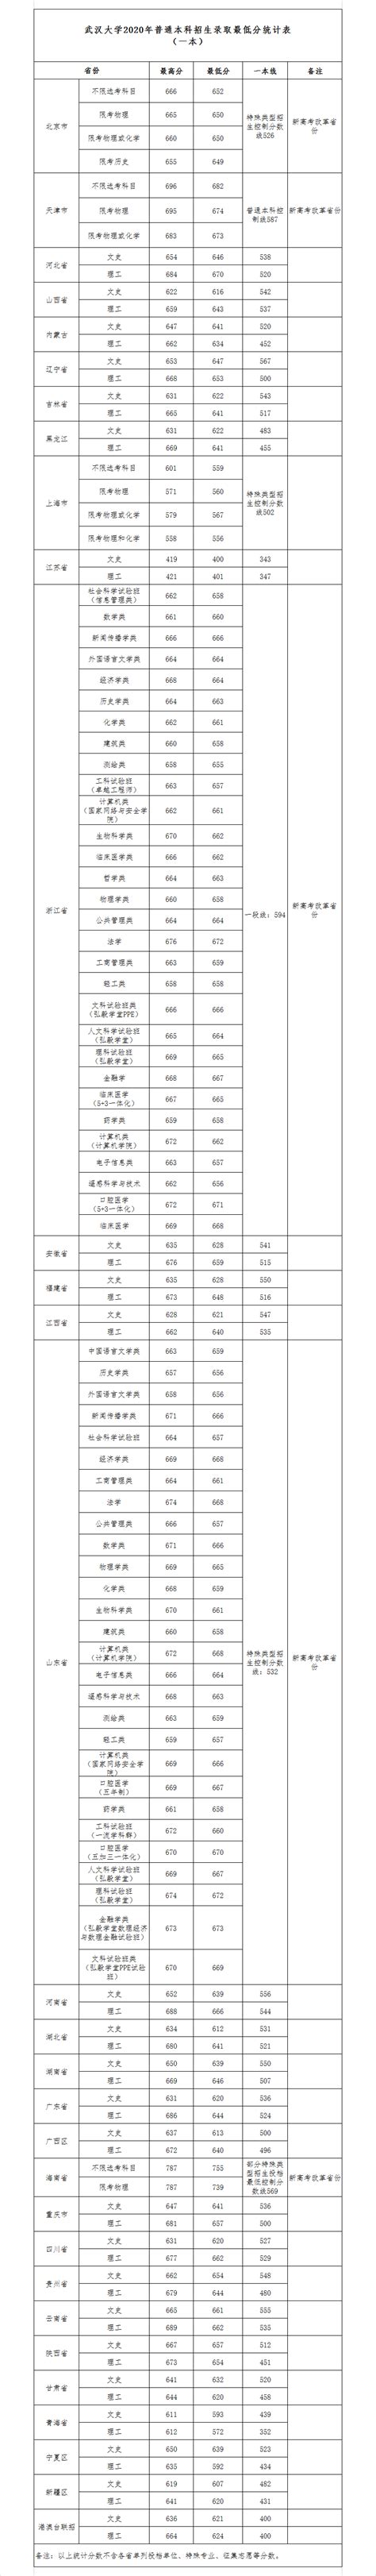 【保研之家】录取名单|武汉大学2022年拟录取推荐免试研究生名单公示 - 知乎